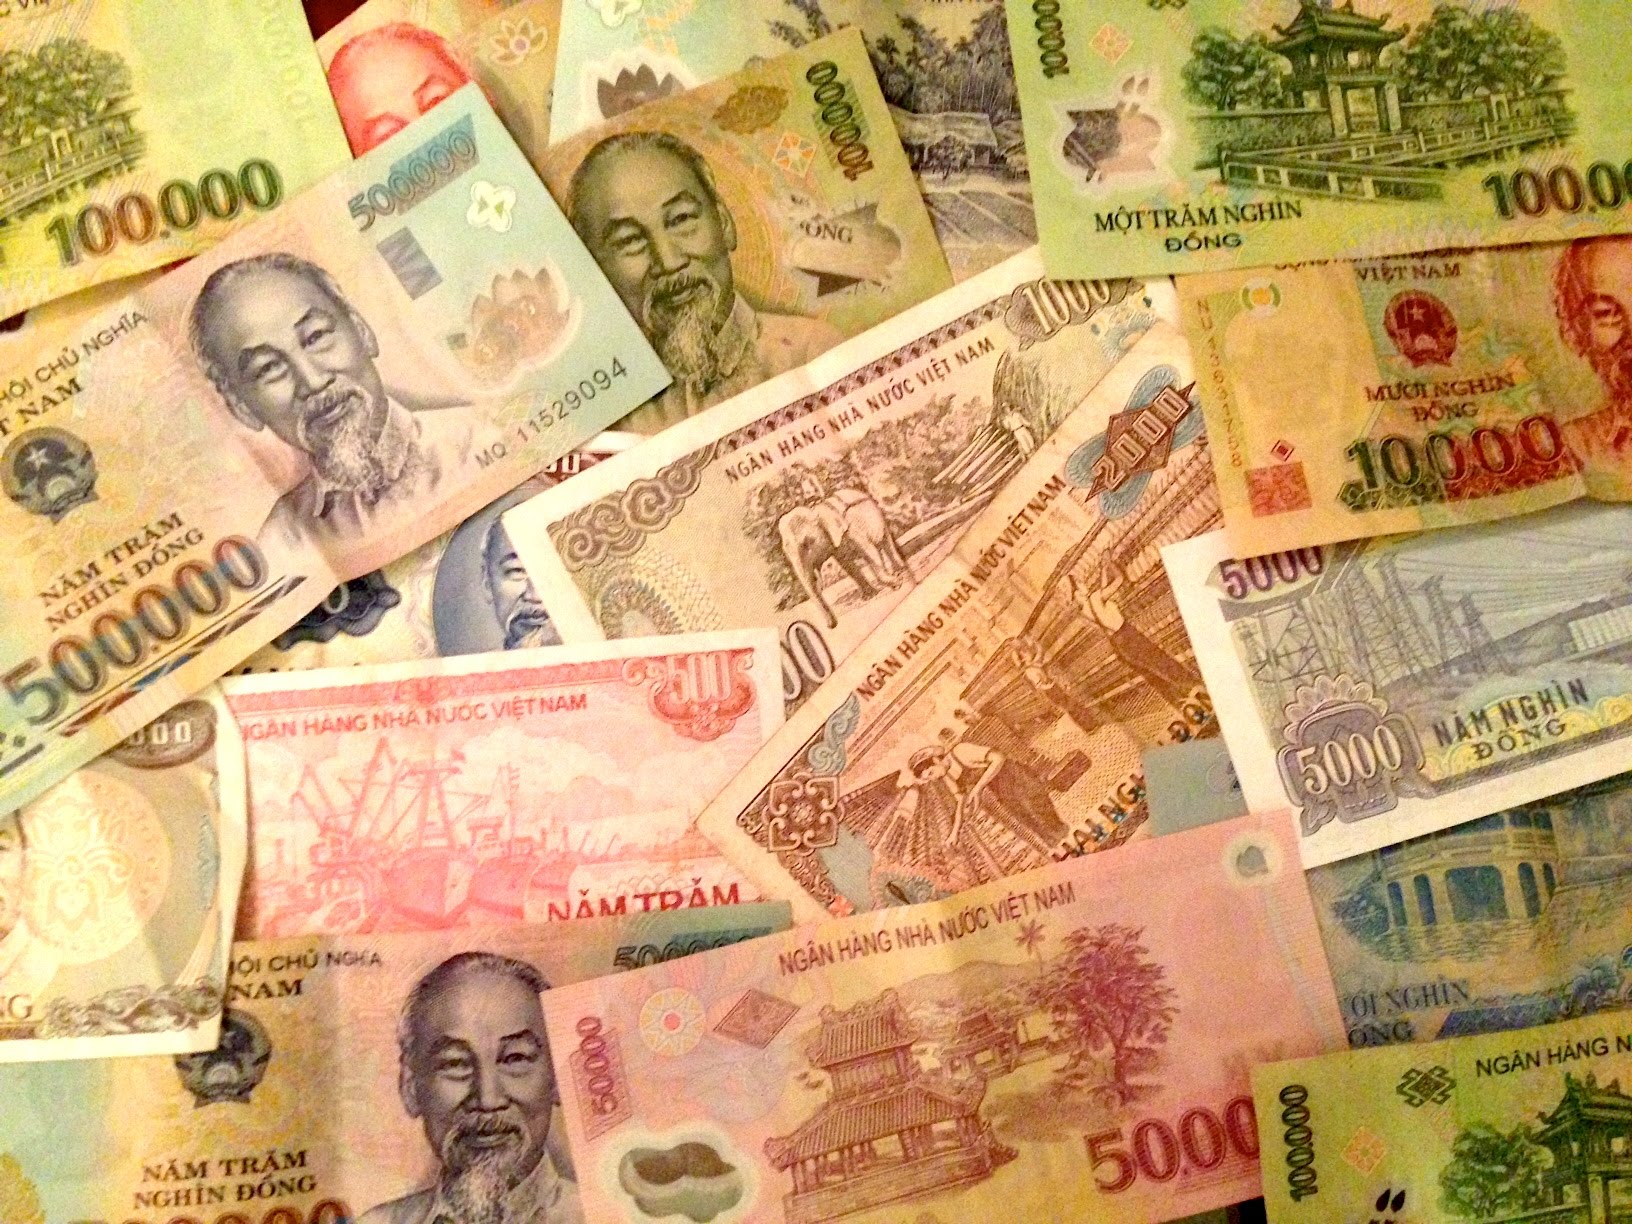 Tiền bạc Việt Nam: Chìa khóa cho việc hiểu rõ các giai đoạn lịch sử của Việt Nam chính là tiền bạc. Qua những đồng xu và tiền giấy đã phát triển qua thời gian, chúng ta có thể tìm thấy nhiều thông tin về sự nghiệp xây dựng của dân tộc. Hành trình khám phá tiền bạc Việt Nam đầy thú vị đang chờ đón bạn.